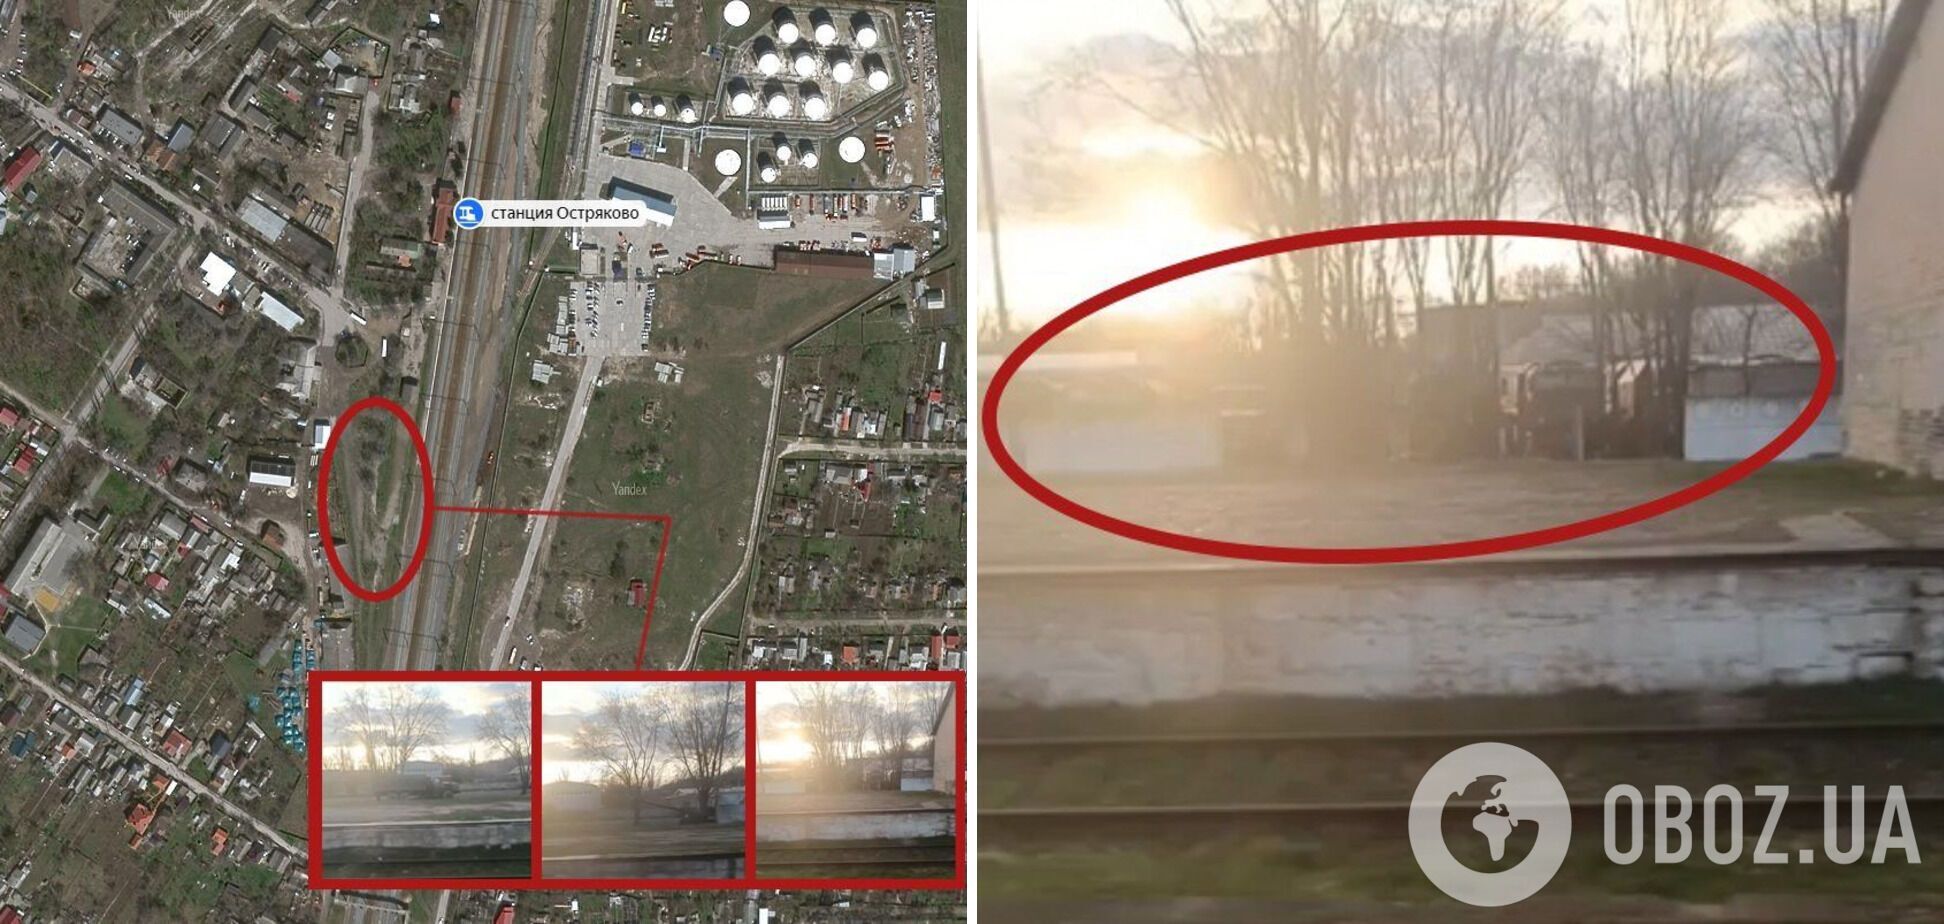 Оккупанты используют гражданских в качестве прикрытия: агенты 'Атеш' разведали место дислокации захватчиков в Крыму. Фото